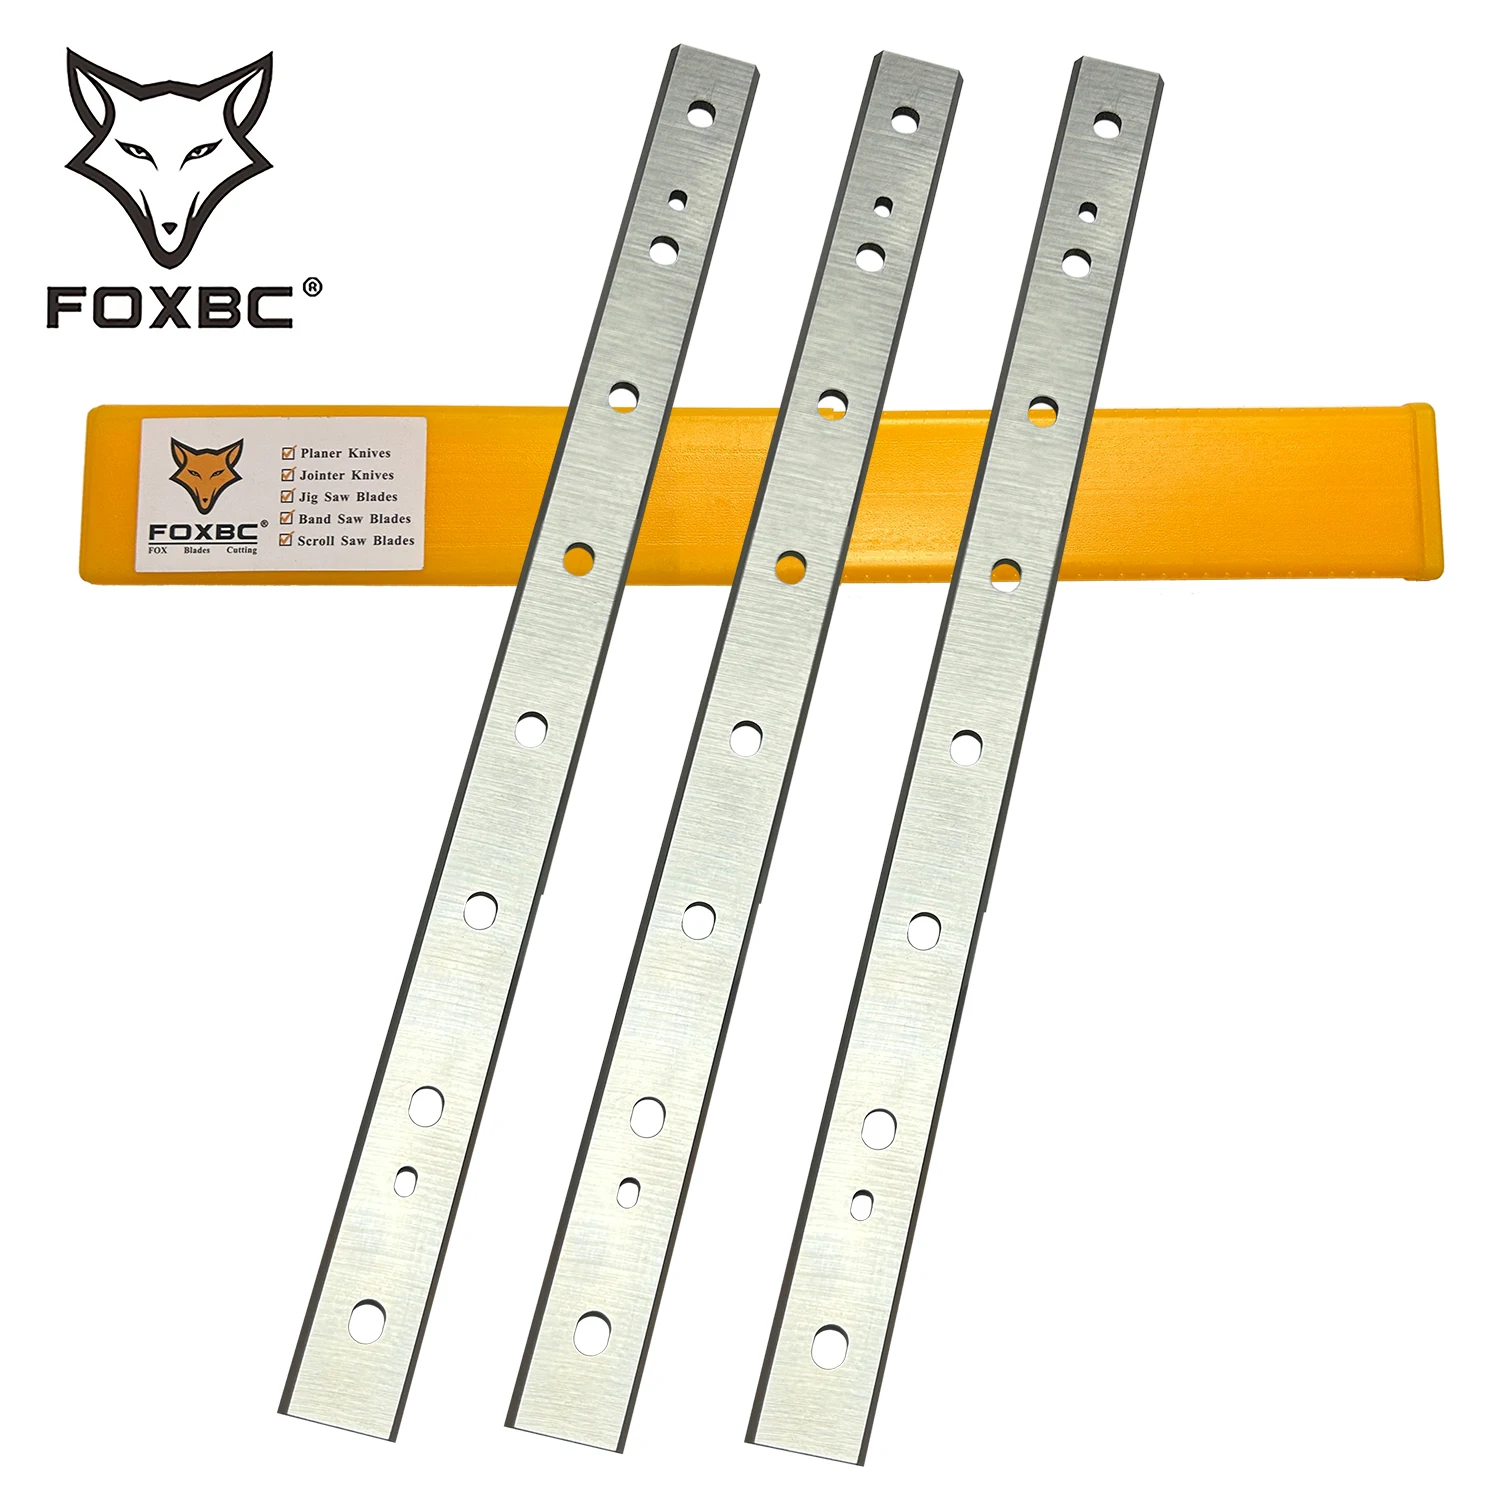 FOXBC 333 mm HSS plaina facas substituição para DeWalt DW735 DW735X, 13 polegadas plaina lâminas DW7352 para corte de madeira